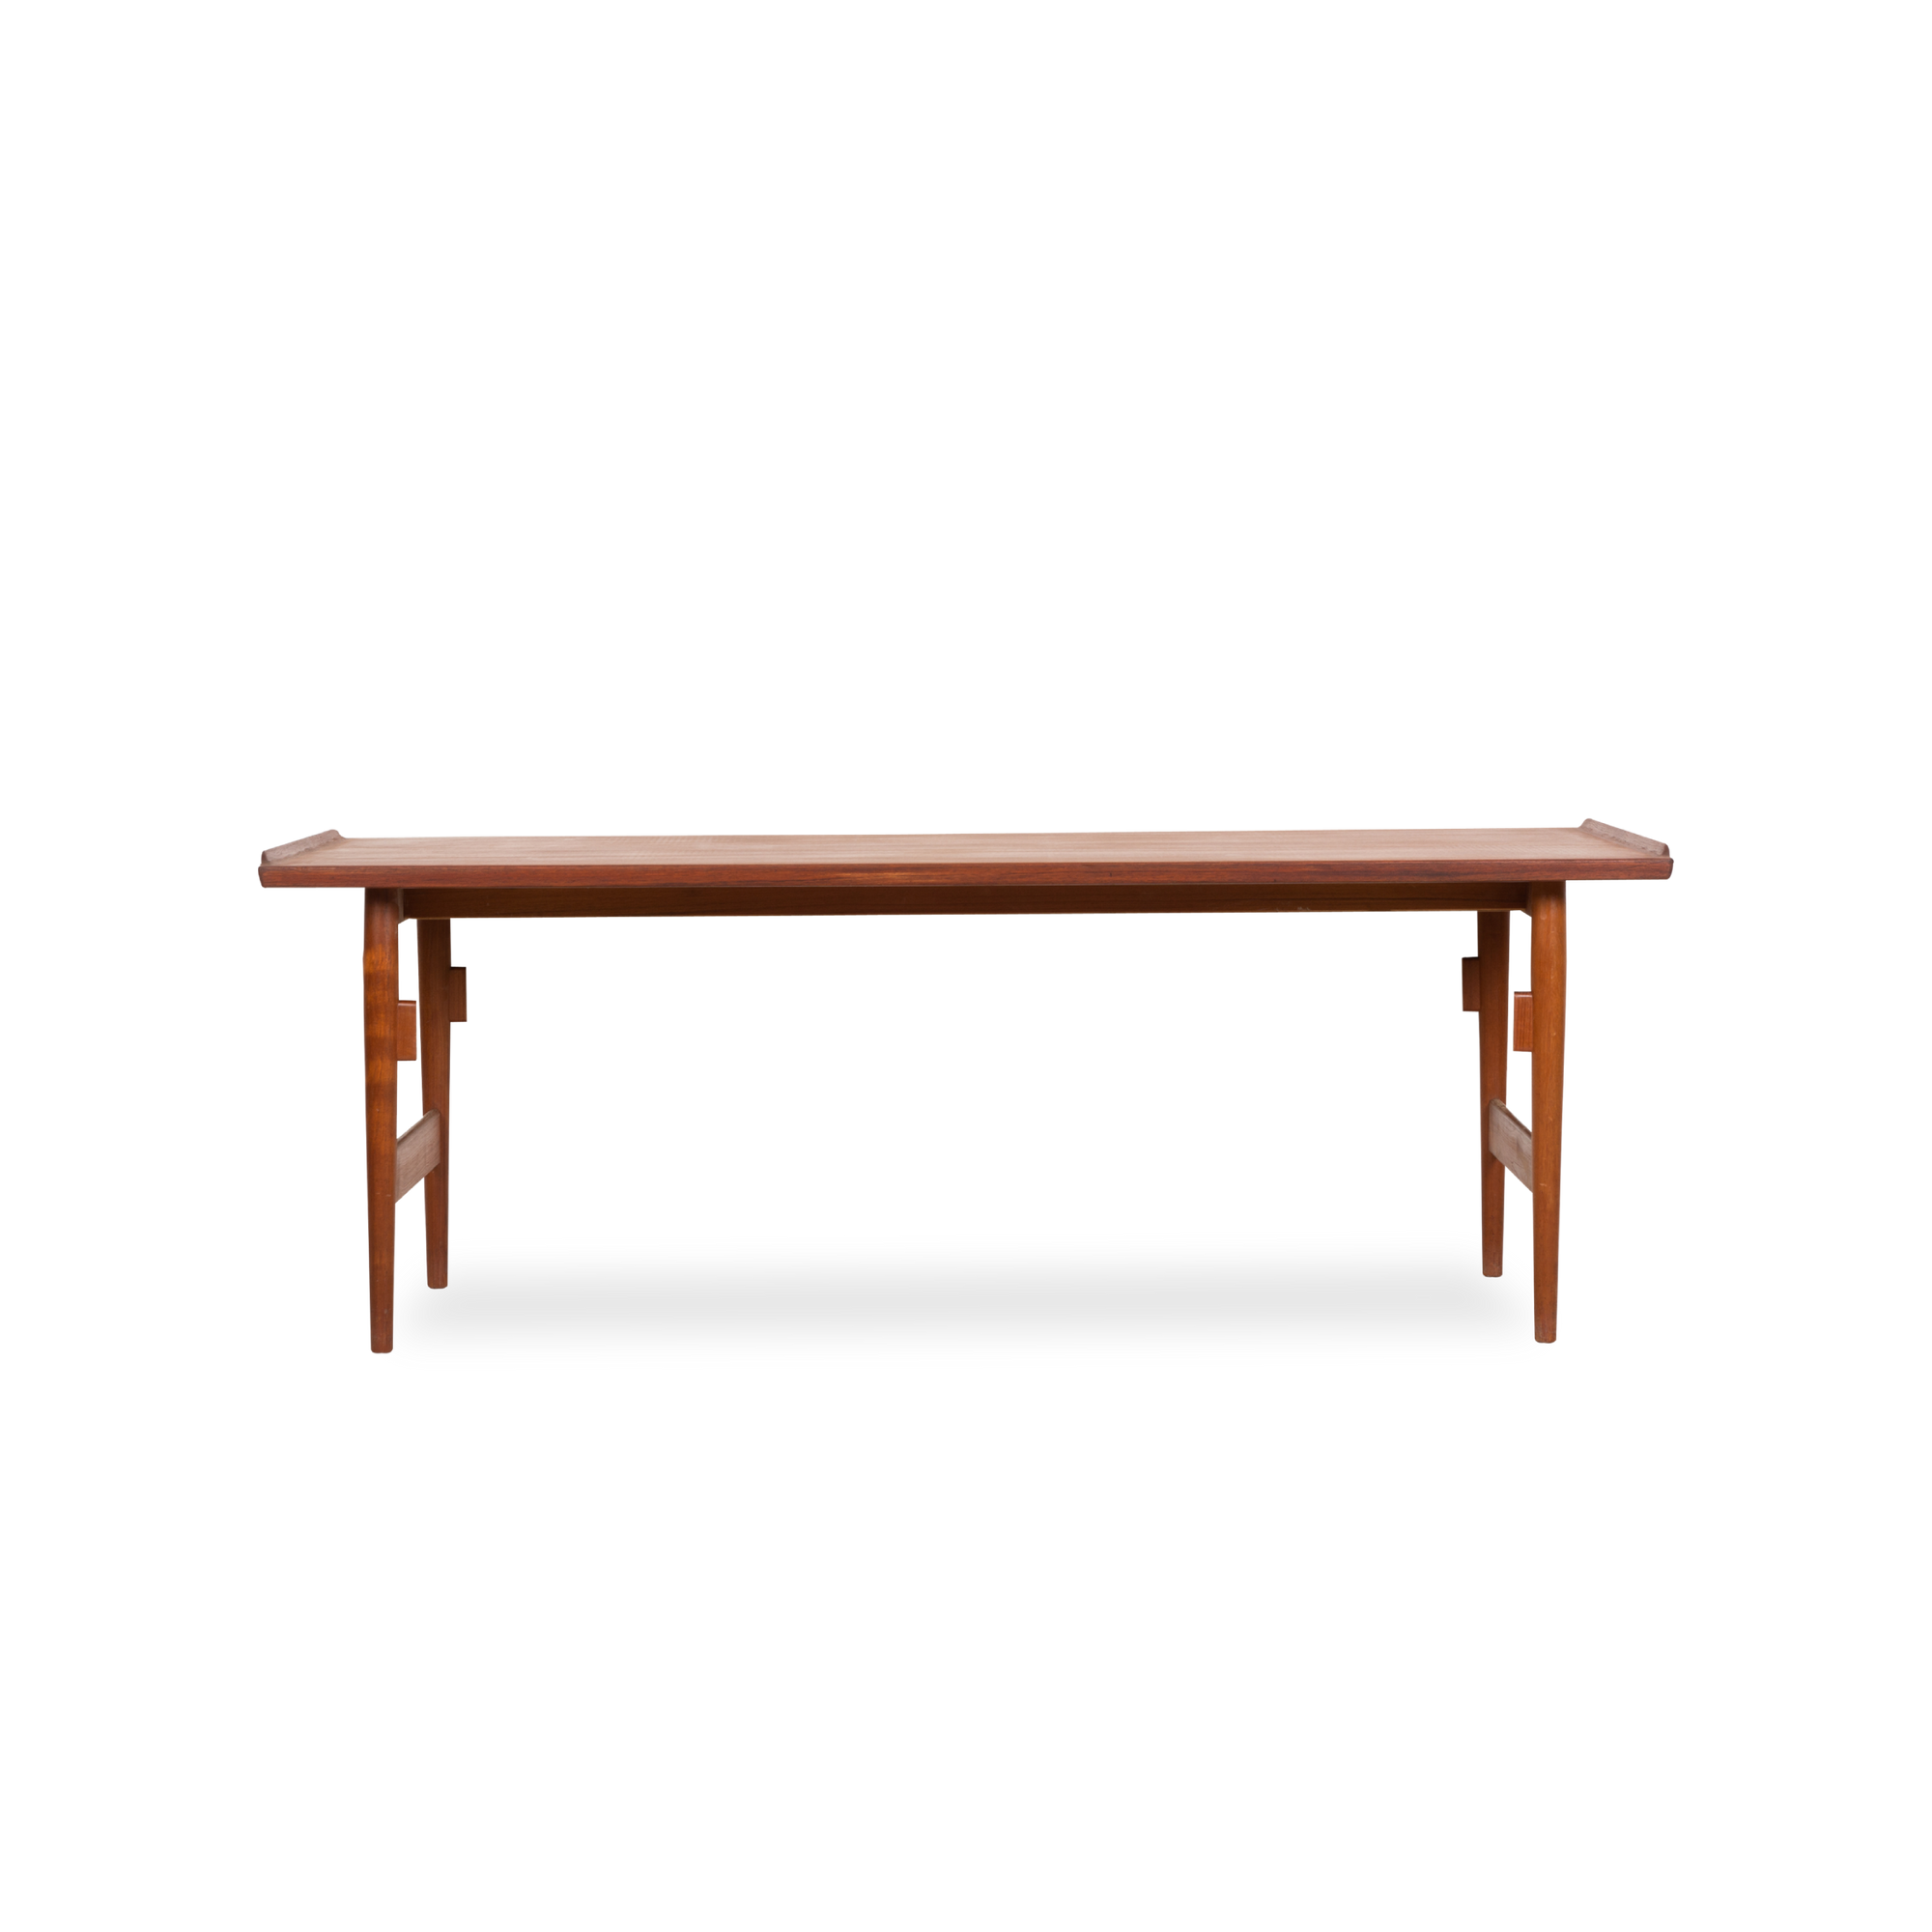 Elegant vintage teak work table designed by Arne Vodder and produced by Sibast Møbler, Denmark in the 1960s.